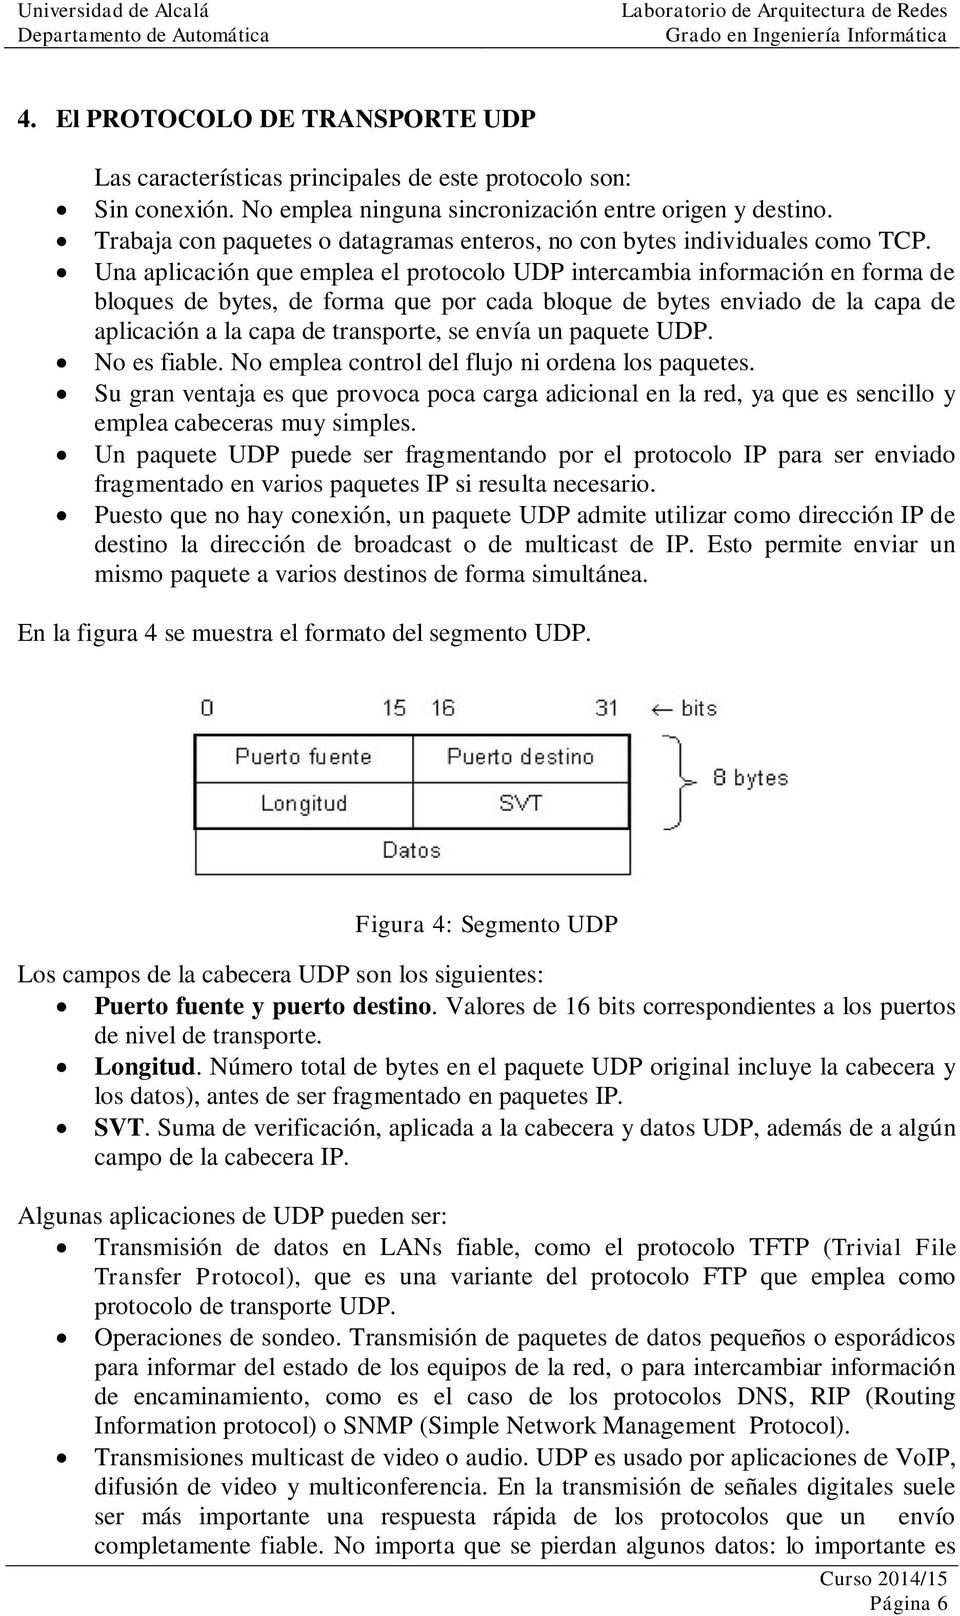 Una aplicación que emplea el protocolo UDP intercambia información en forma de bloques de bytes, de forma que por cada bloque de bytes enviado de la capa de aplicación a la capa de transporte, se